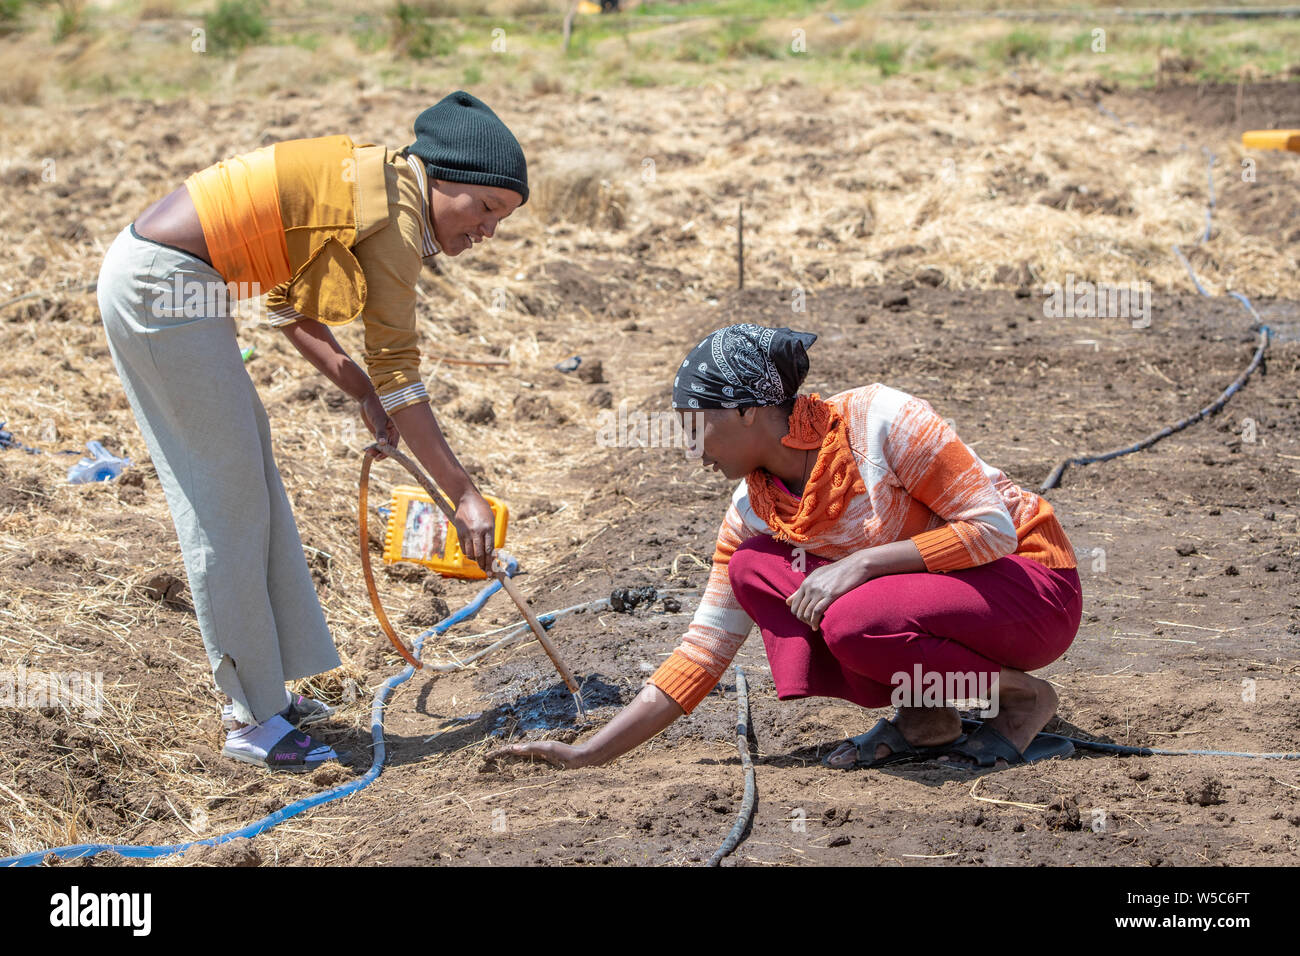 Deux étudiants travaillent à irriguer un champ, Debre Berhan University, Debre Berhan, Ethiopie Banque D'Images